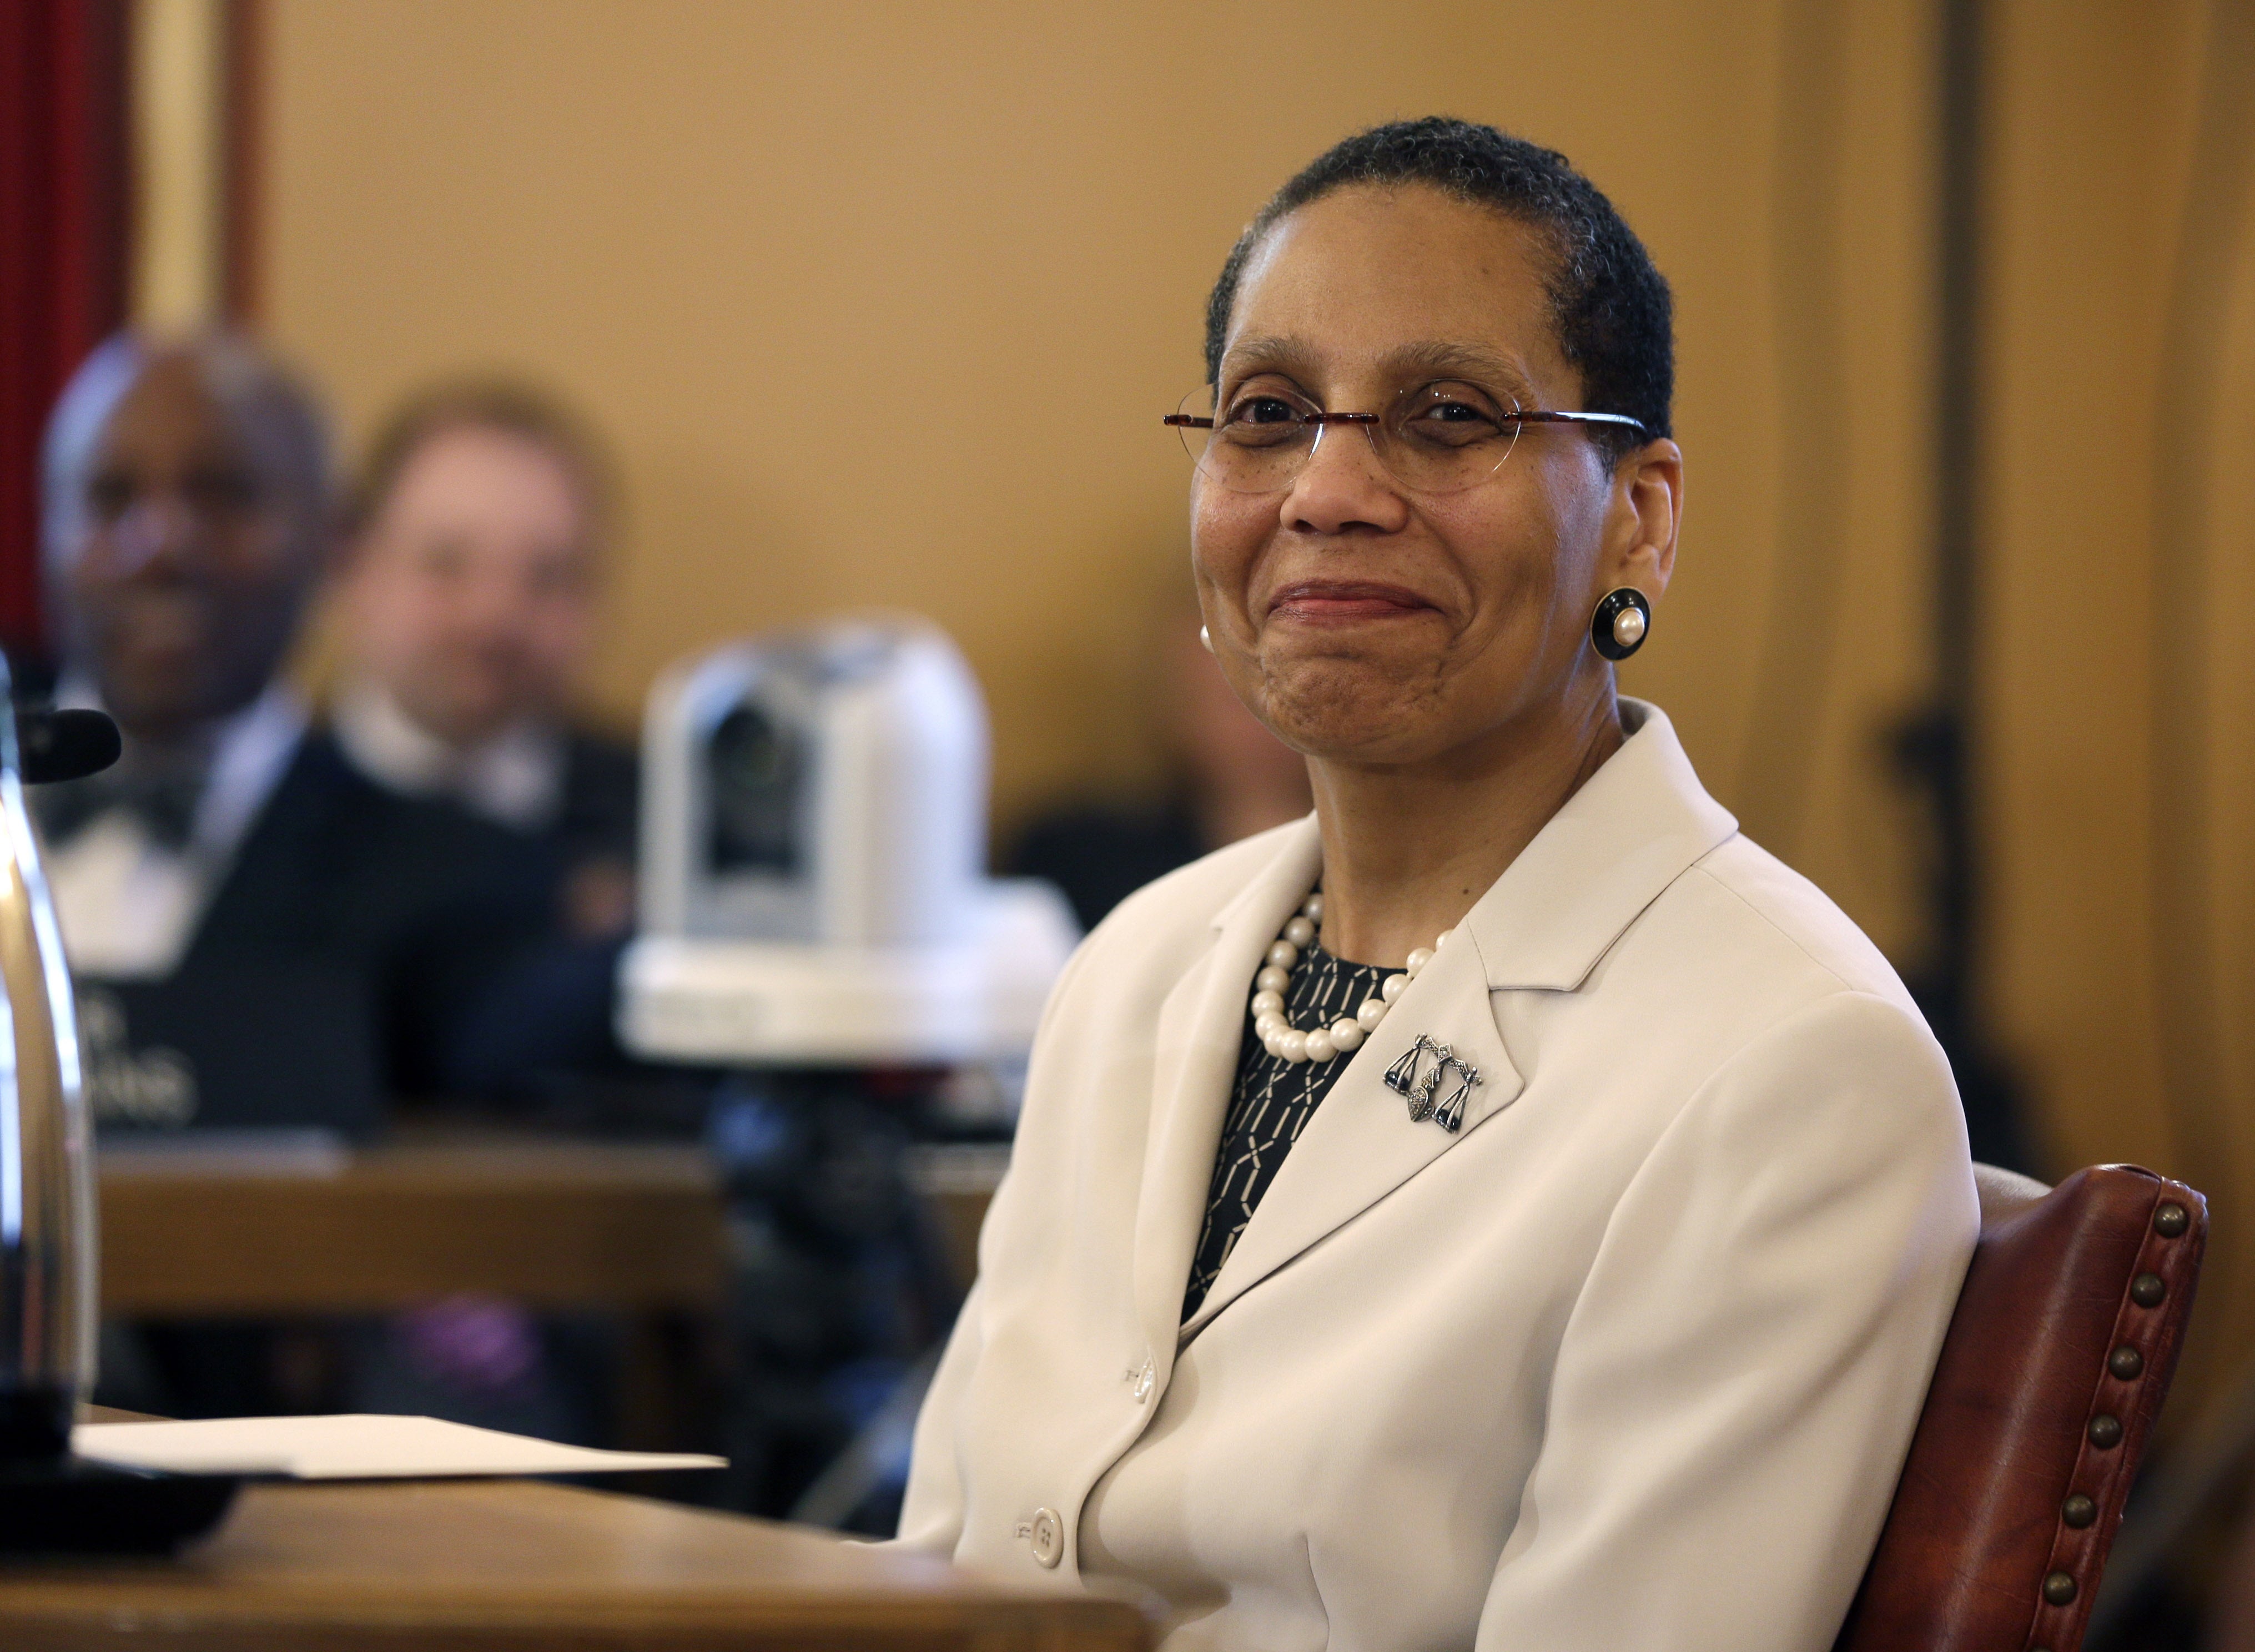 Sheila Abdus-Salaam, First Black Woman Judge In New York's Top Court, Found Dead
